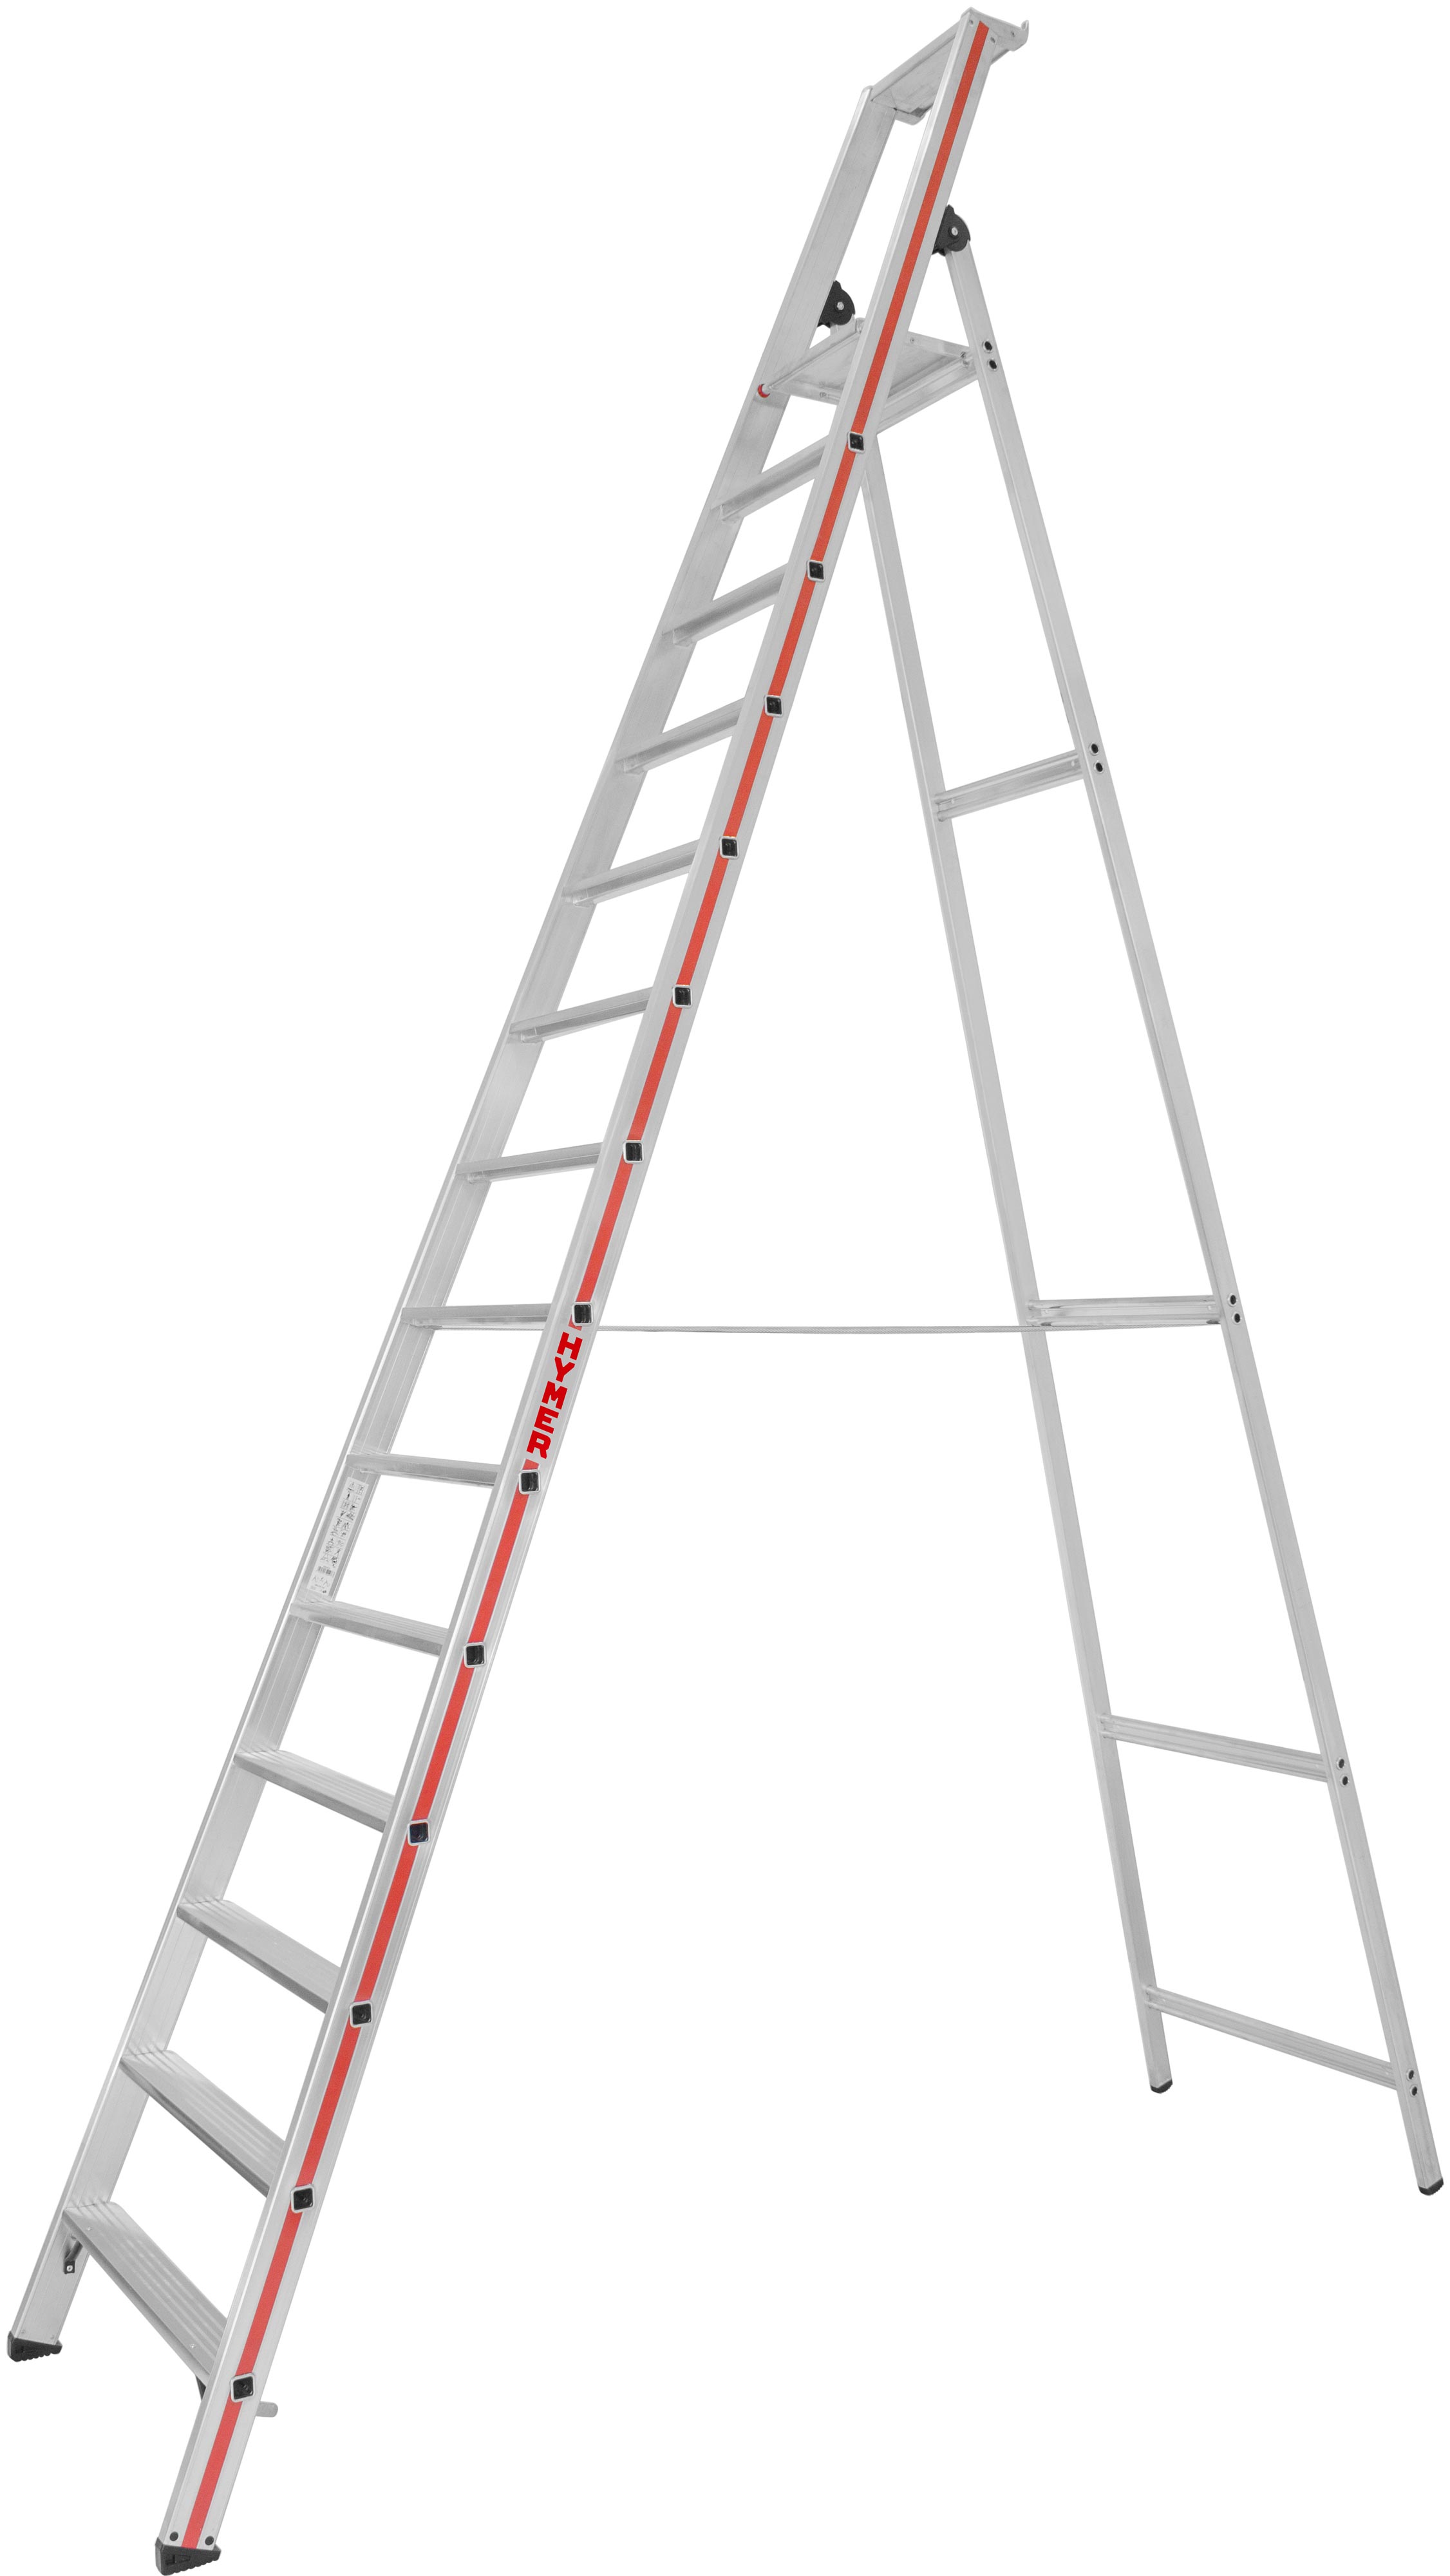 Hymer Stehleiter SC 80 Alu 14 Stufen Leiter einseitig begehbar - Industrieprogramm (HY-802614) Bild-01